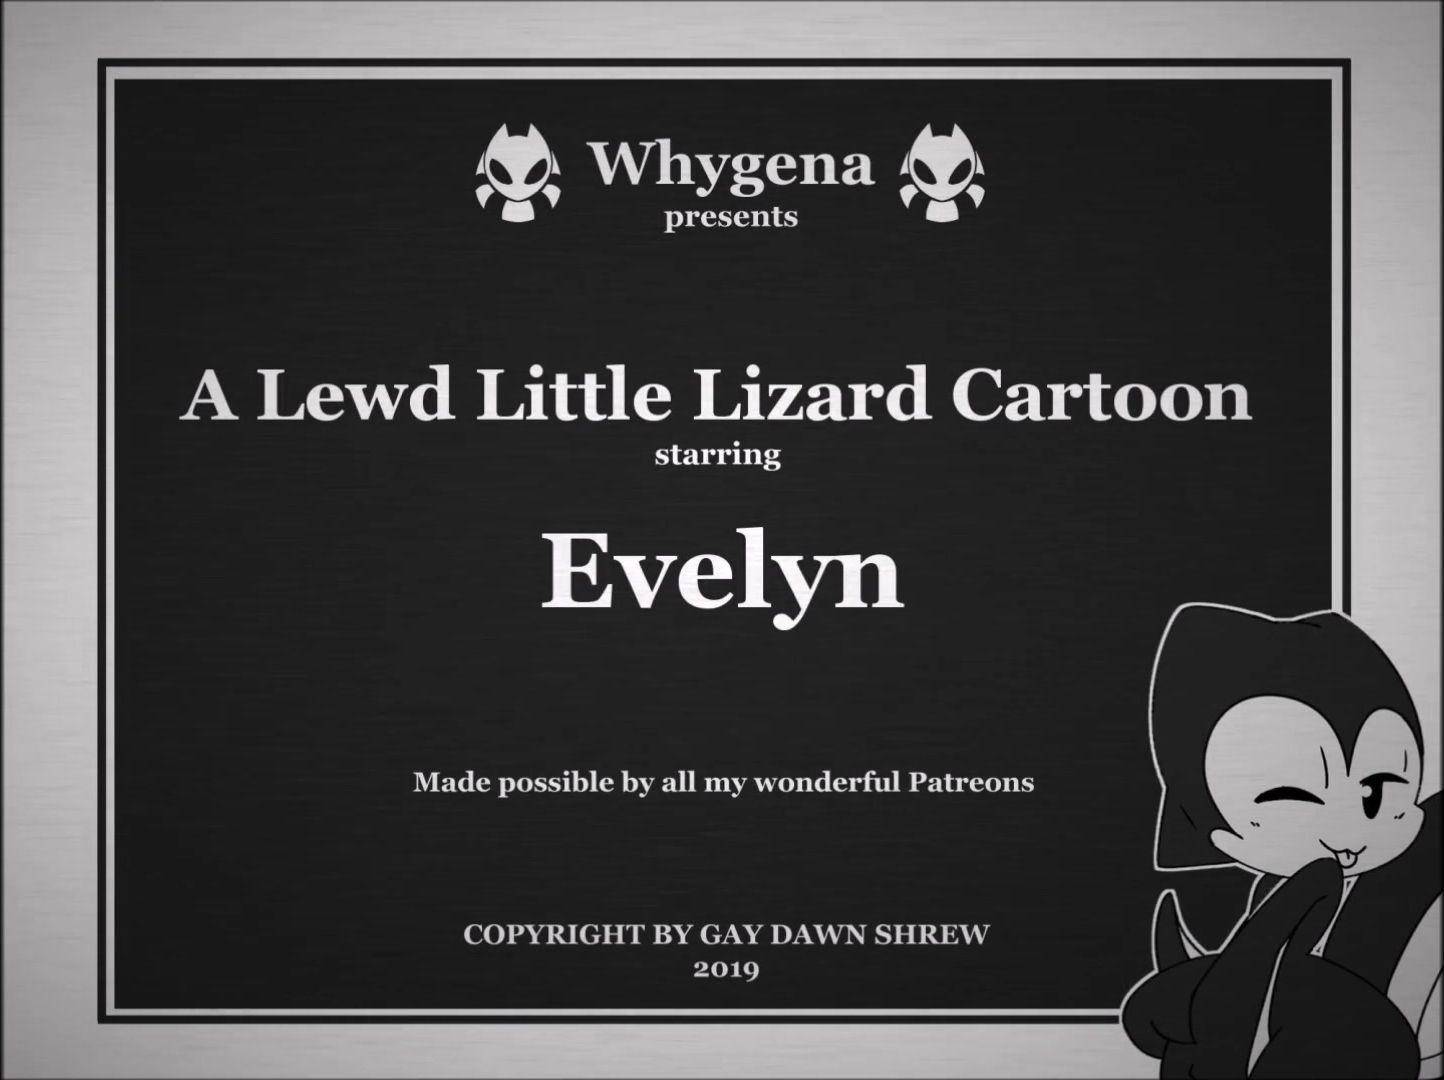 1444px x 1080px - A Lewd Little Lizard Cartoon [whygena]